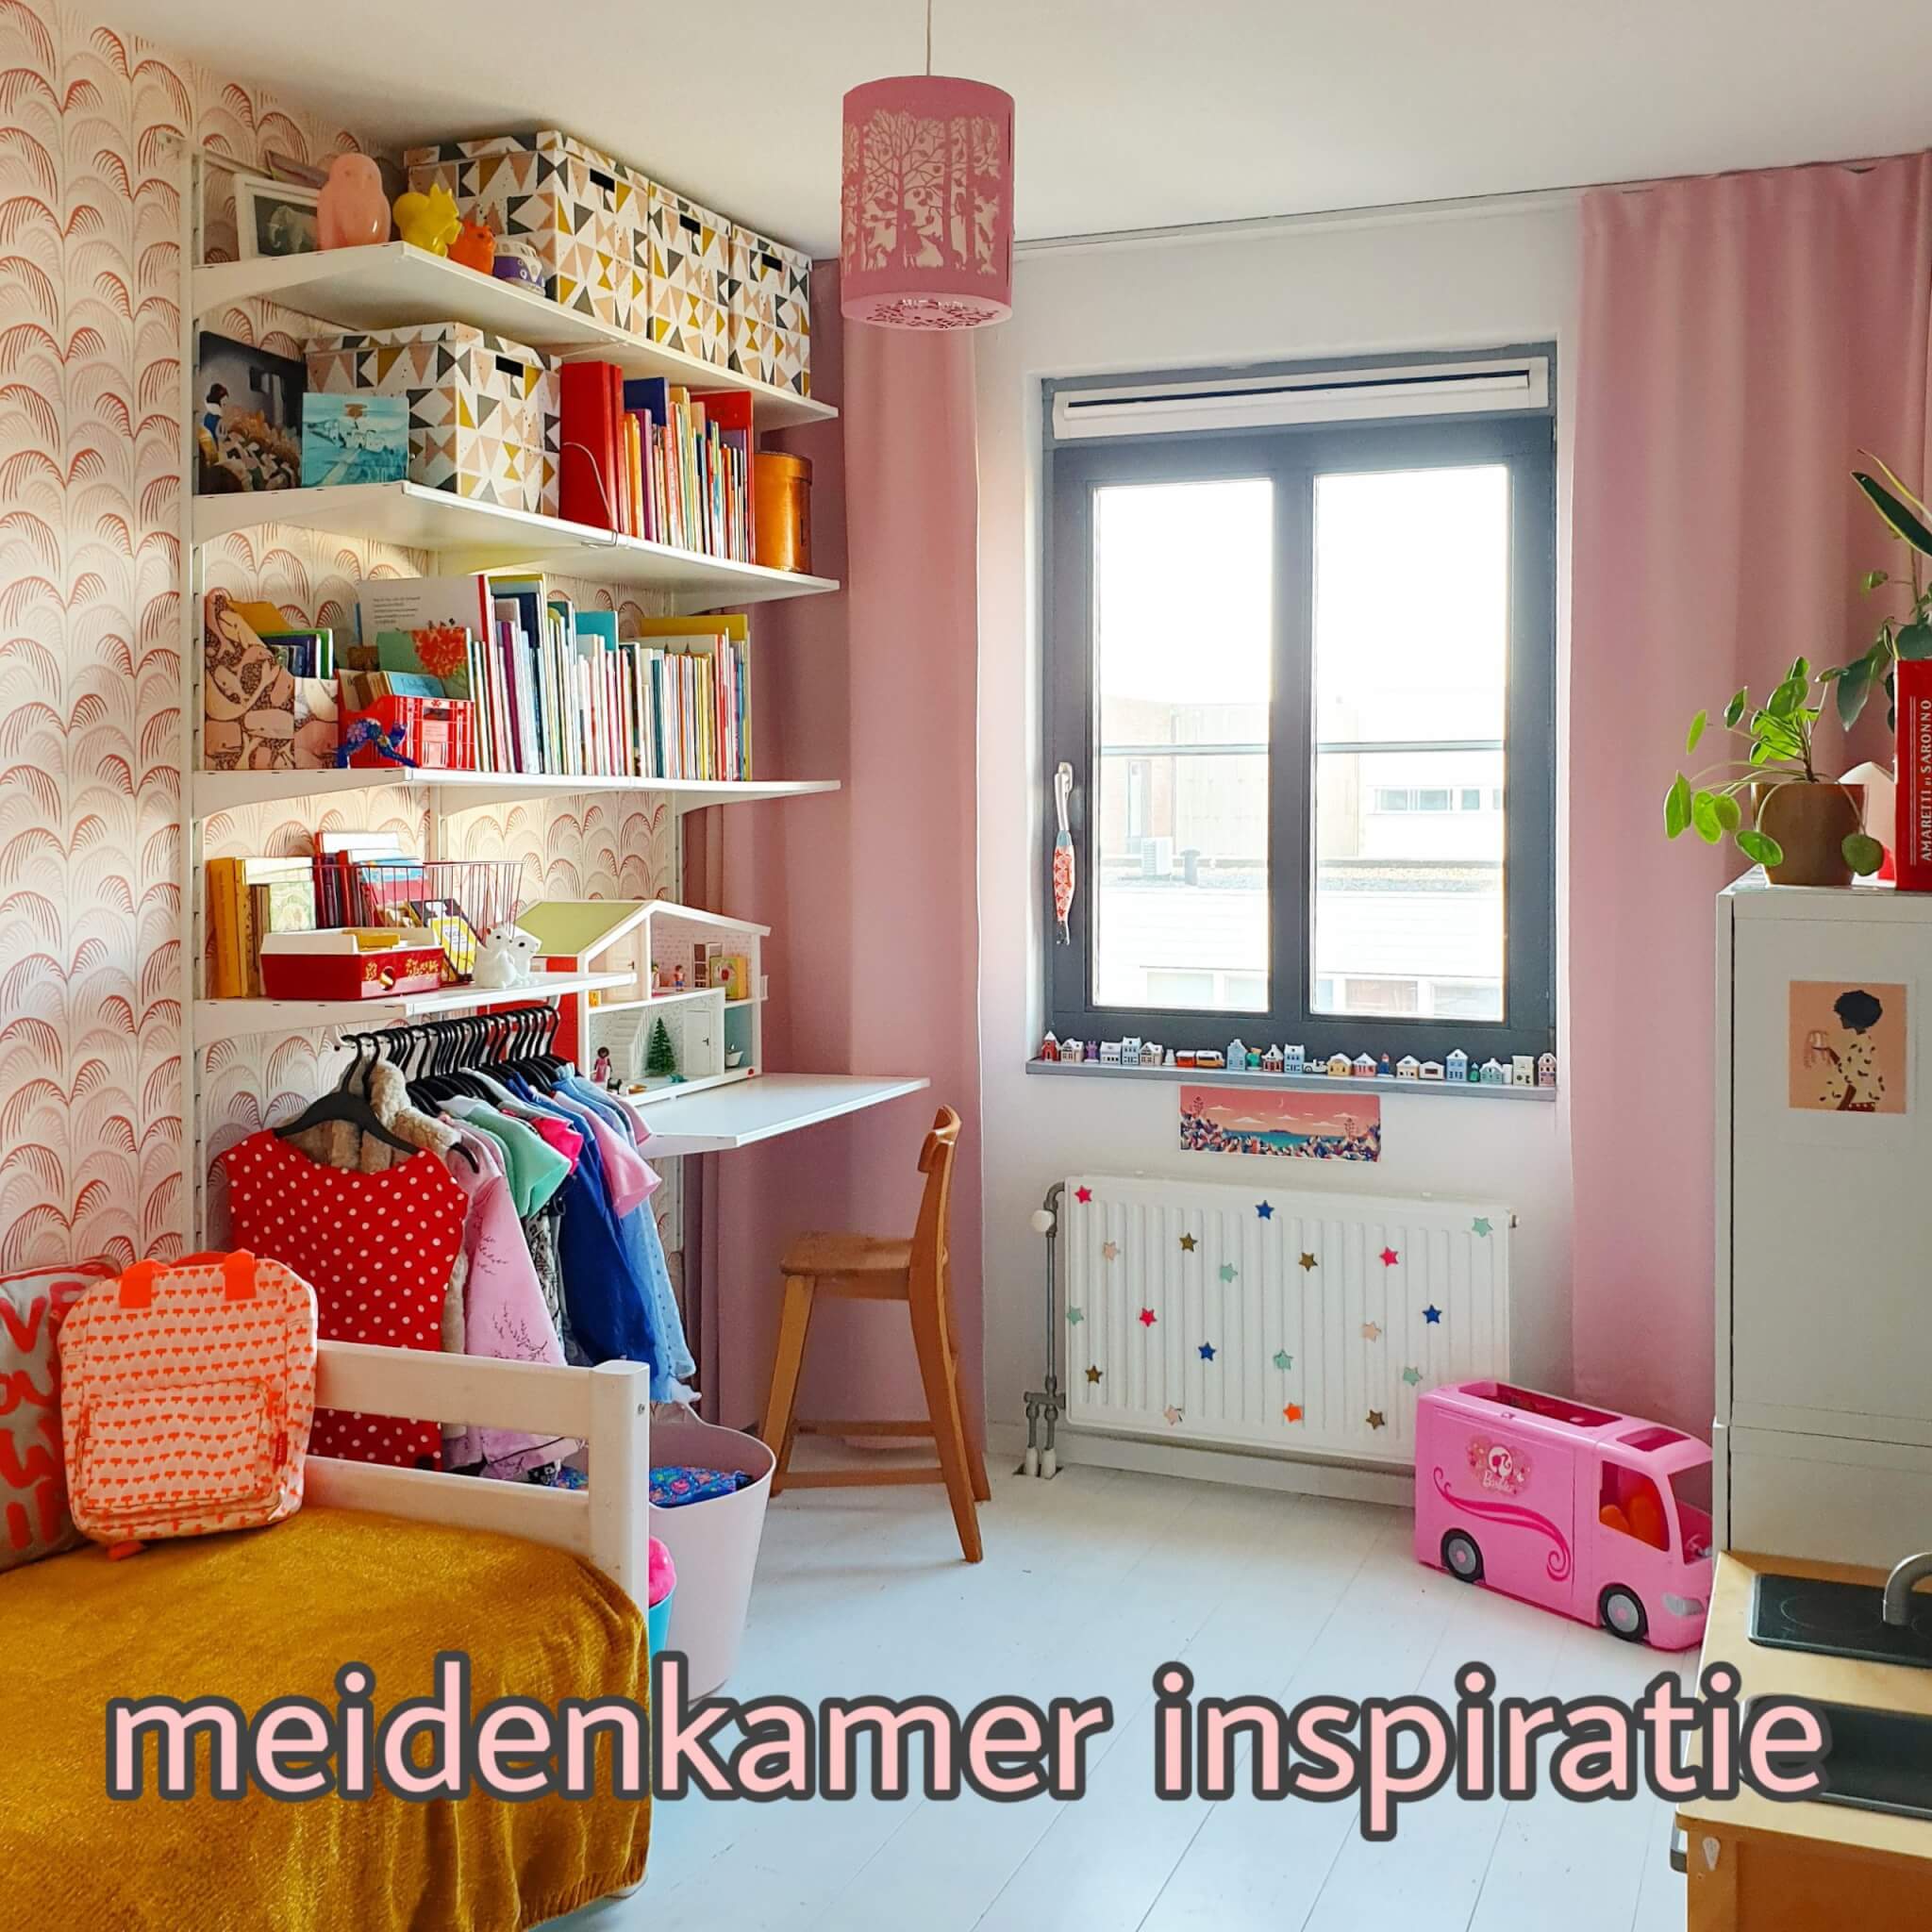 schipper mager Rijke man Kinderkamer inspiratie: onze meidenkamer met wit, roze, rood en geel Leuk  met kids